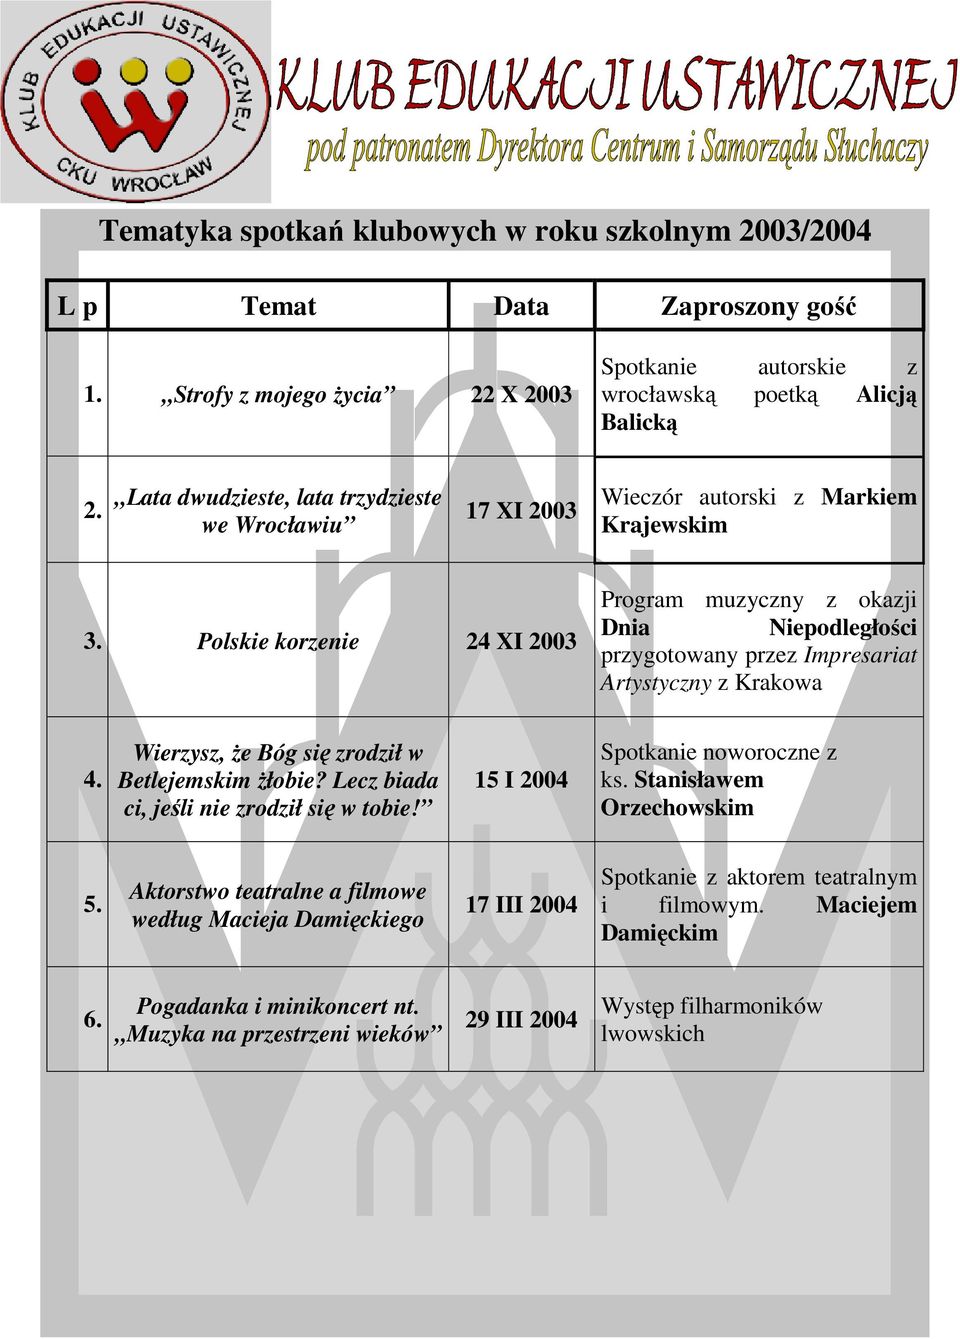 Polskie korzenie 24 XI 2003 Program muzyczny z okazji Dnia Niepodległości przygotowany przez Impresariat Artystyczny z Krakowa Wierzysz, że Bóg się zrodził w Betlejemskim żłobie?